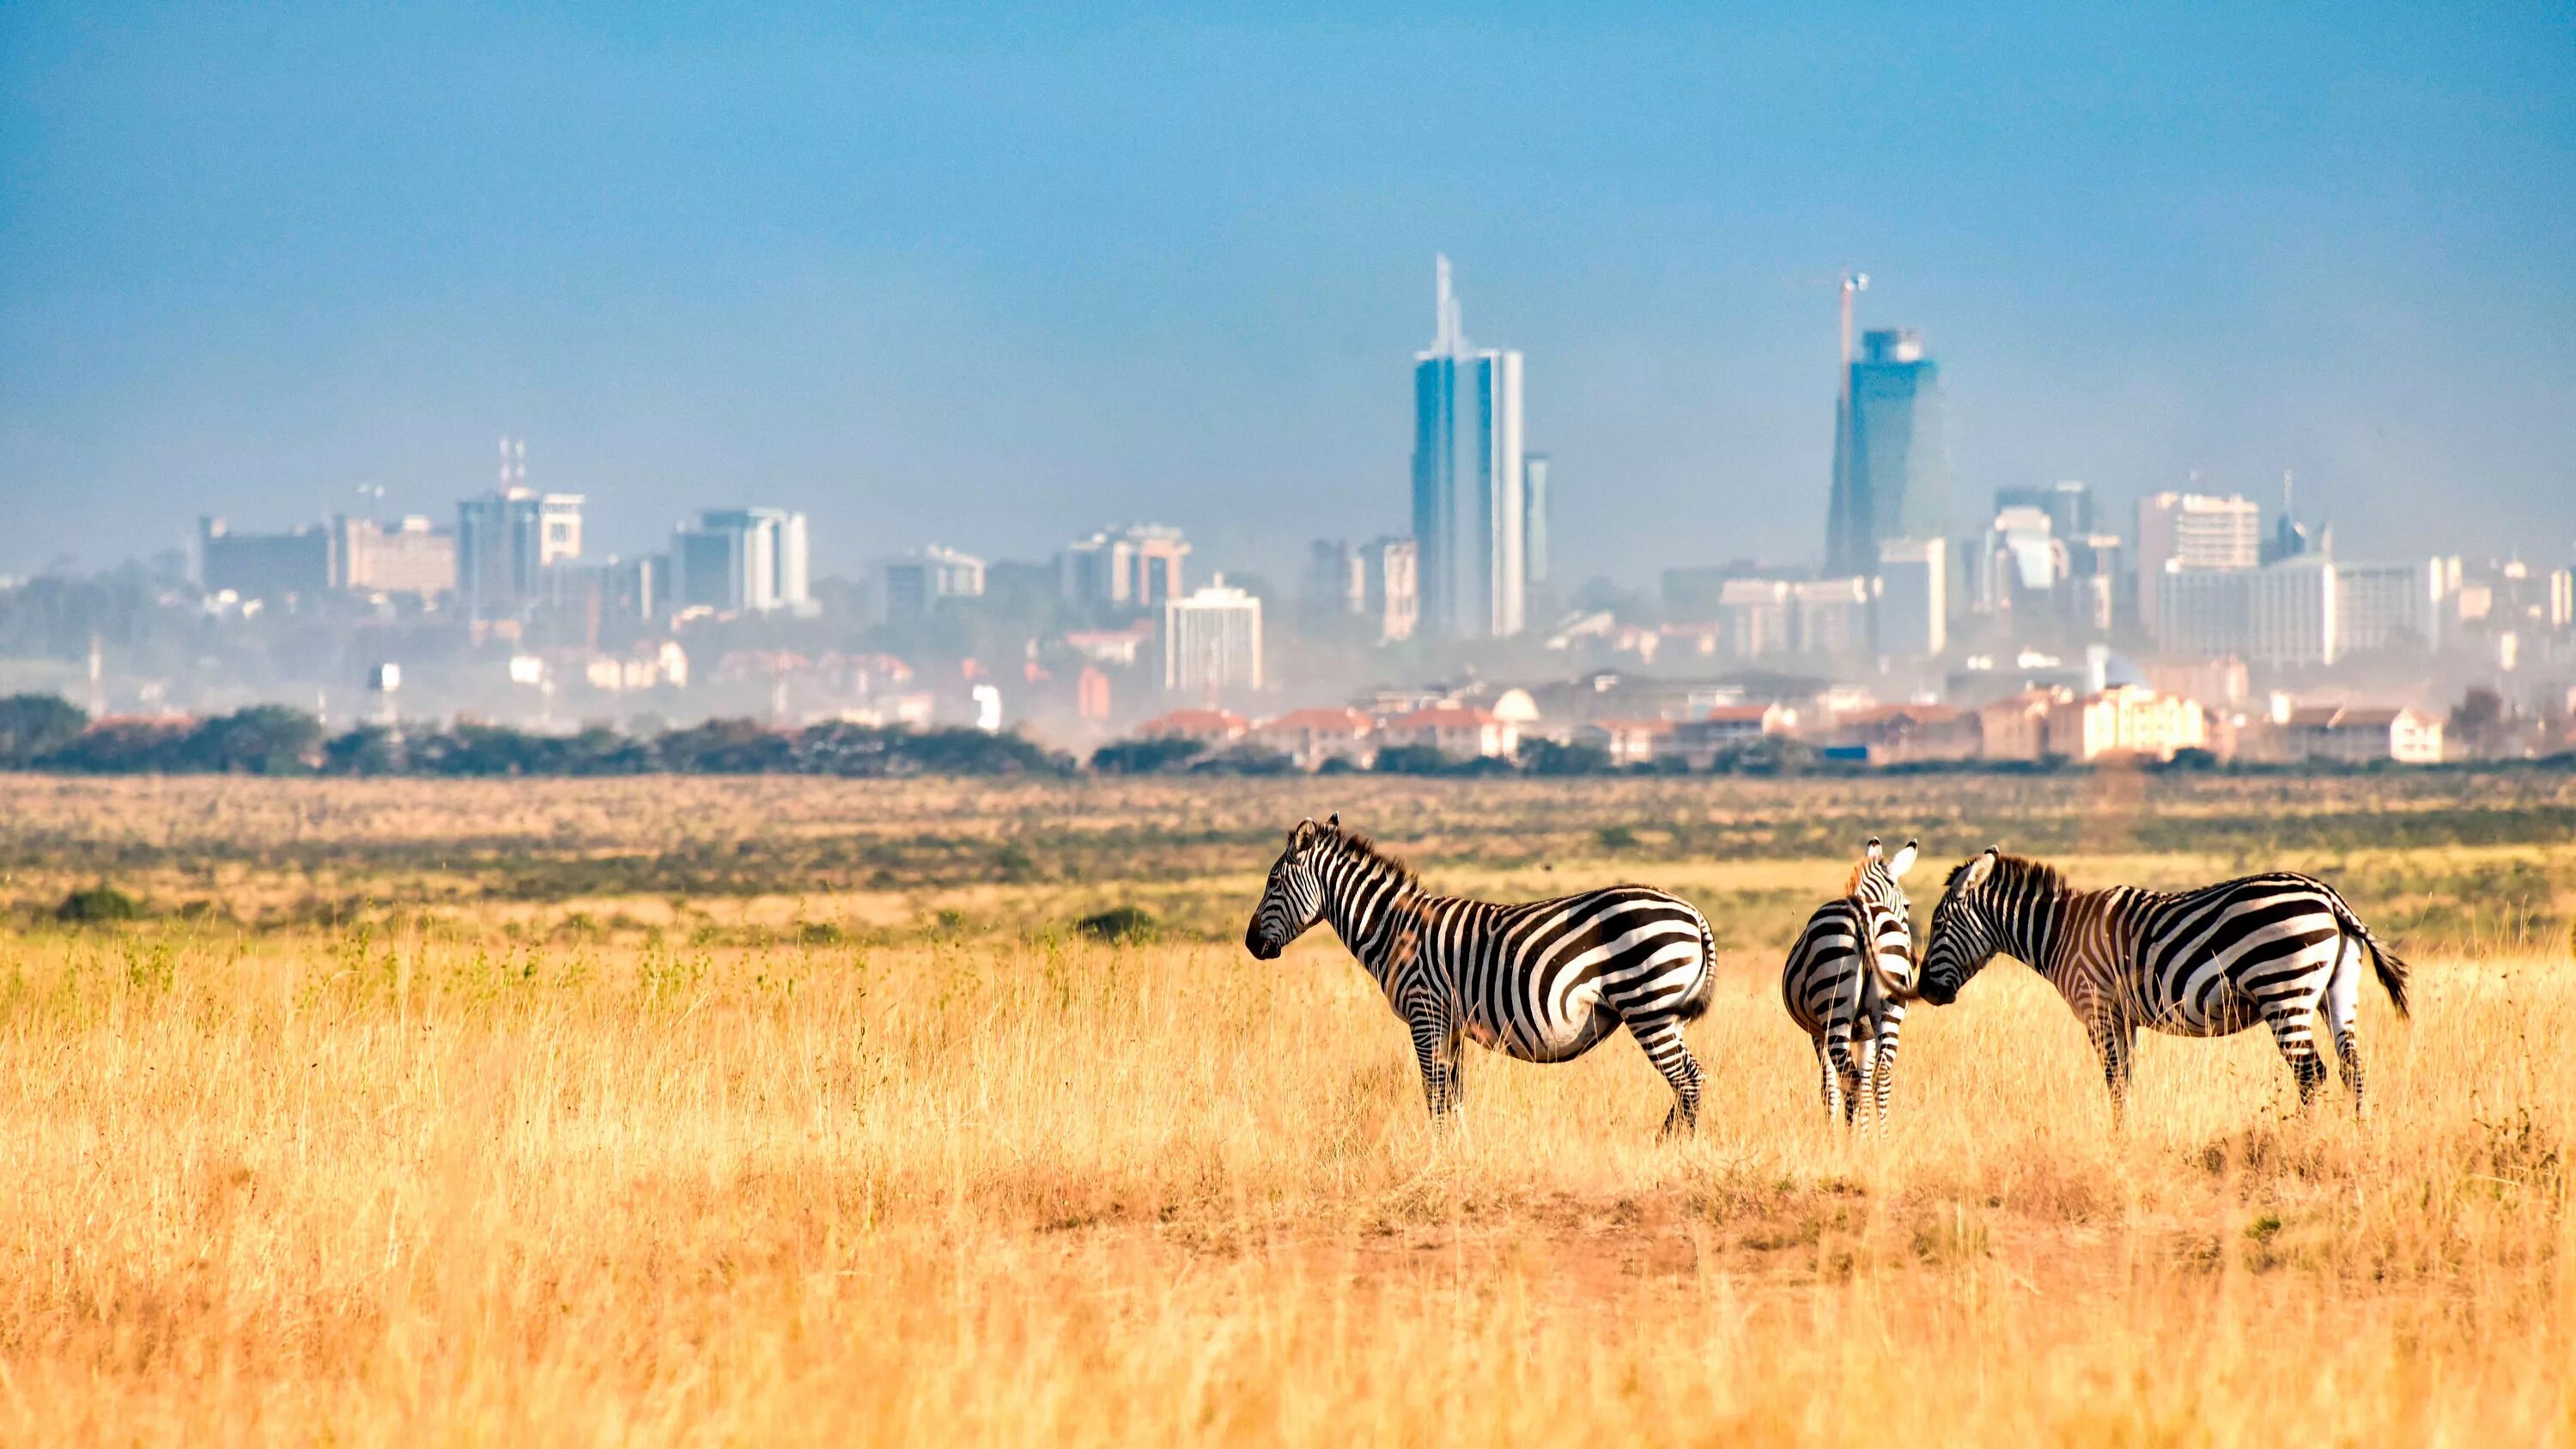 Africa city. Кения парк Найроби. Найроби (столица Кении). Национальный парк Найроби в Африке. Африка Кения Найроби.